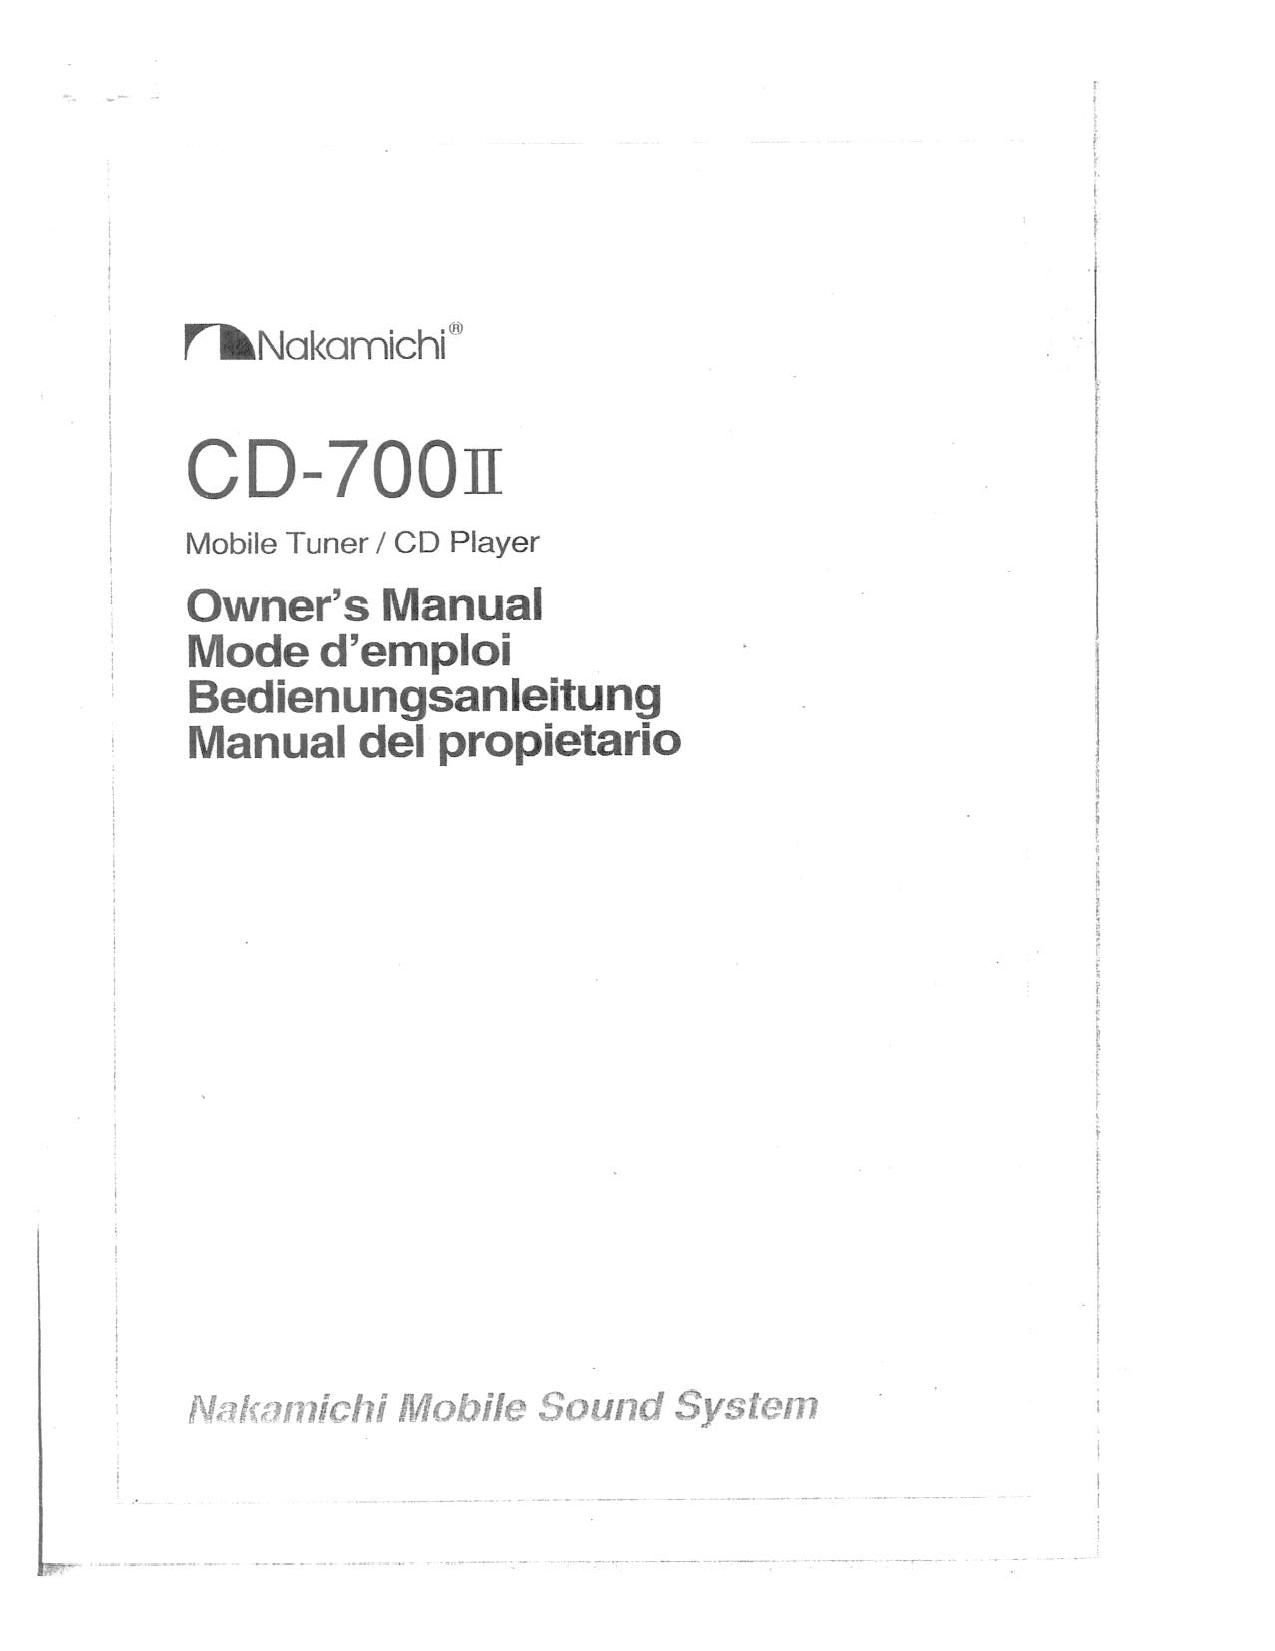 Nakamichi CD 700 II Owners Manual